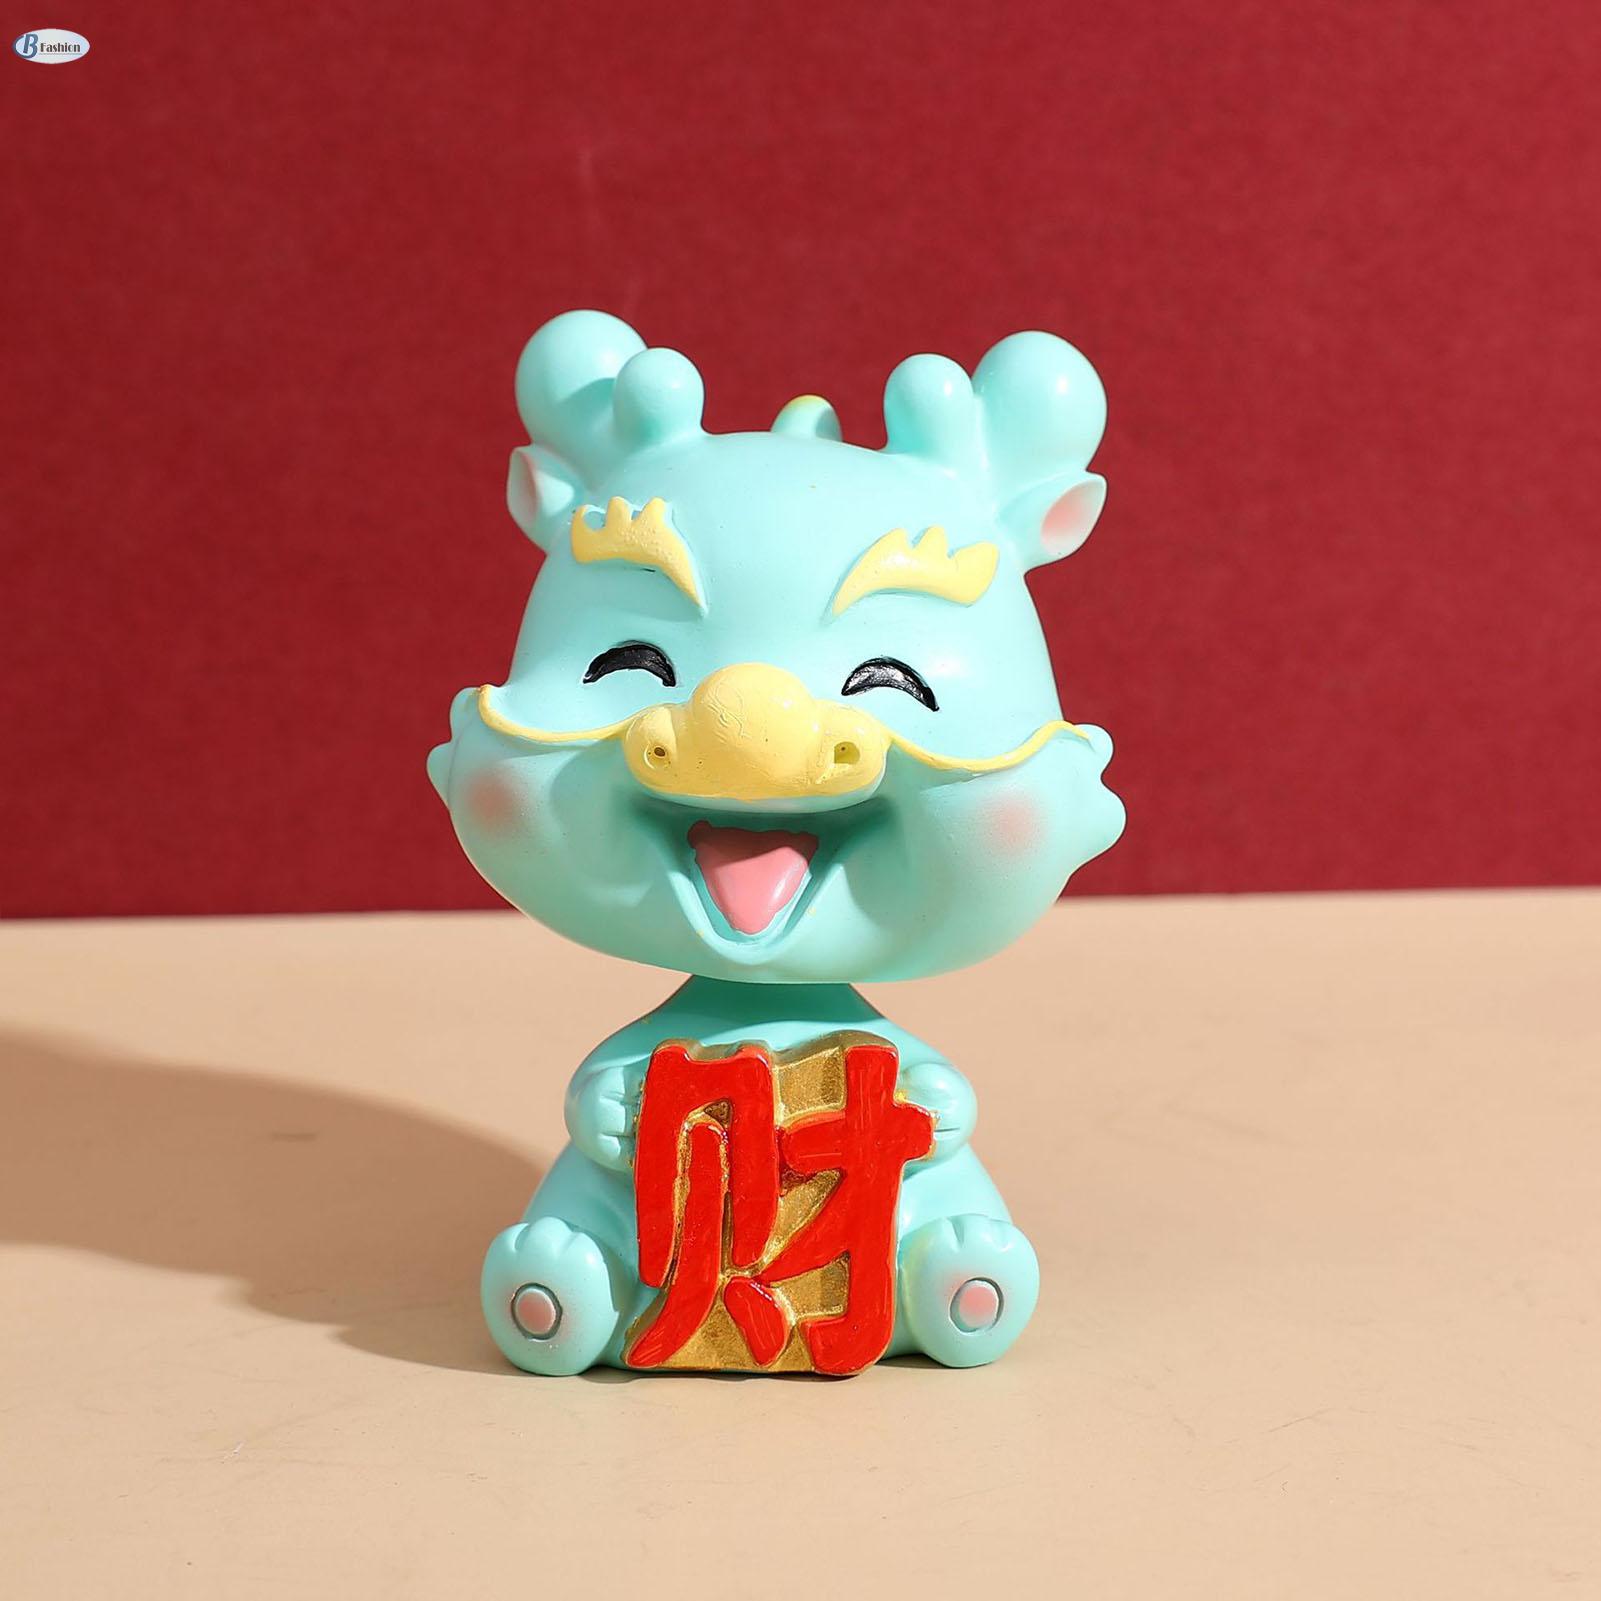 B-f lắc đầu dễ thương rồng trang trí nhựa rồng may mắn Trung Quốc hoàng đạo món quà năm mới Trung Quốc quà tặng năm mới BF-MY